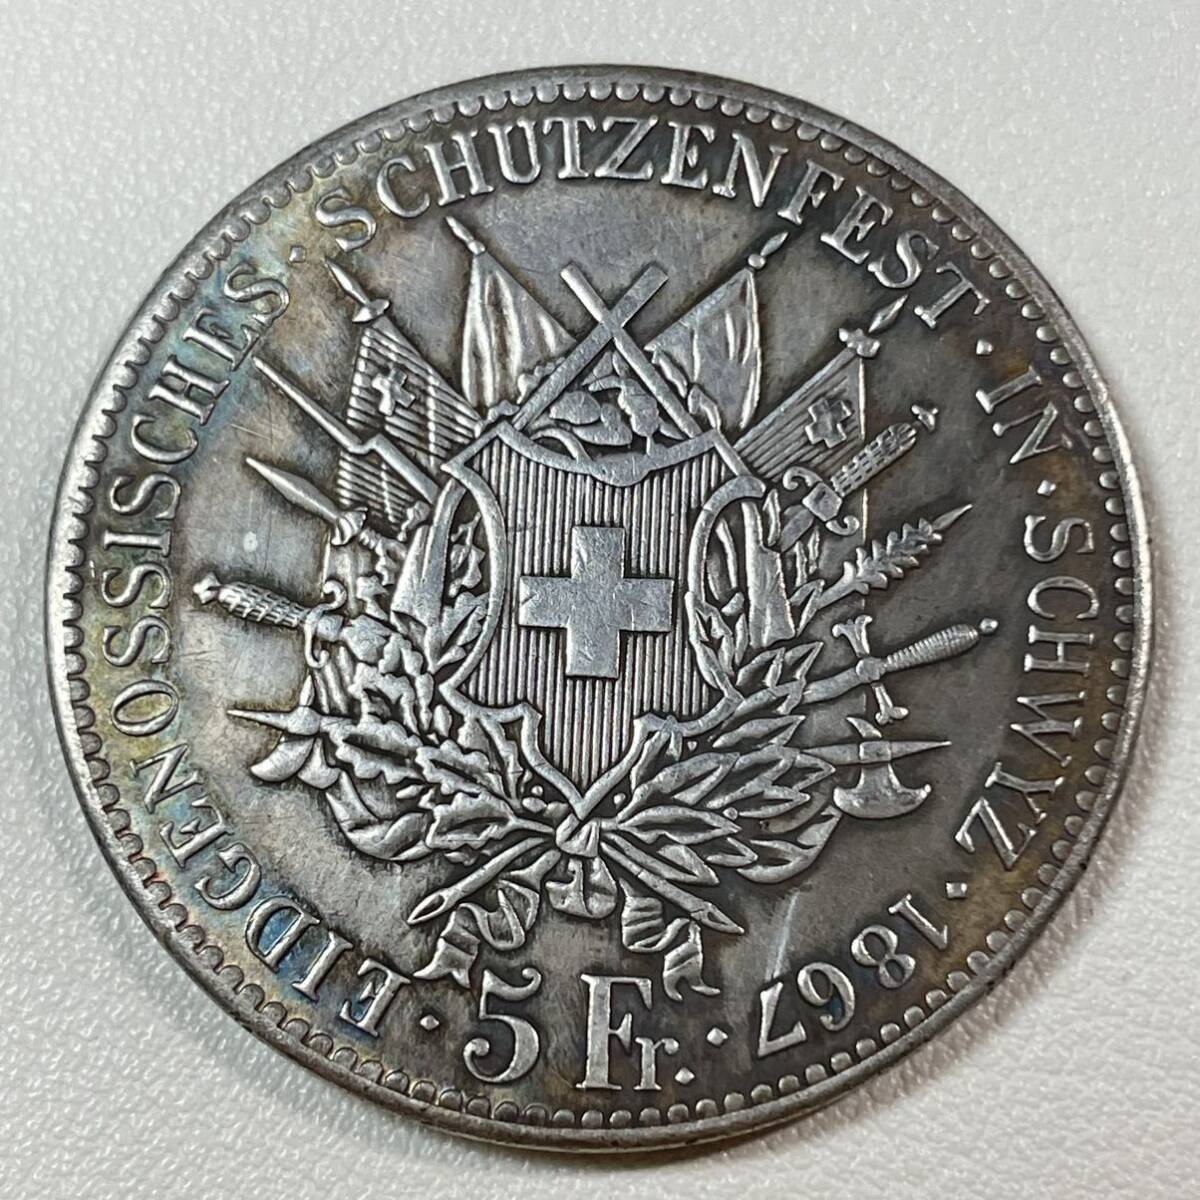 スイス 硬貨 古銭 シュヴィーツ州 1867年 5フランケン 州の花輪を守るライオン 国章 連邦射撃祭 コイン 重24.37g _画像1